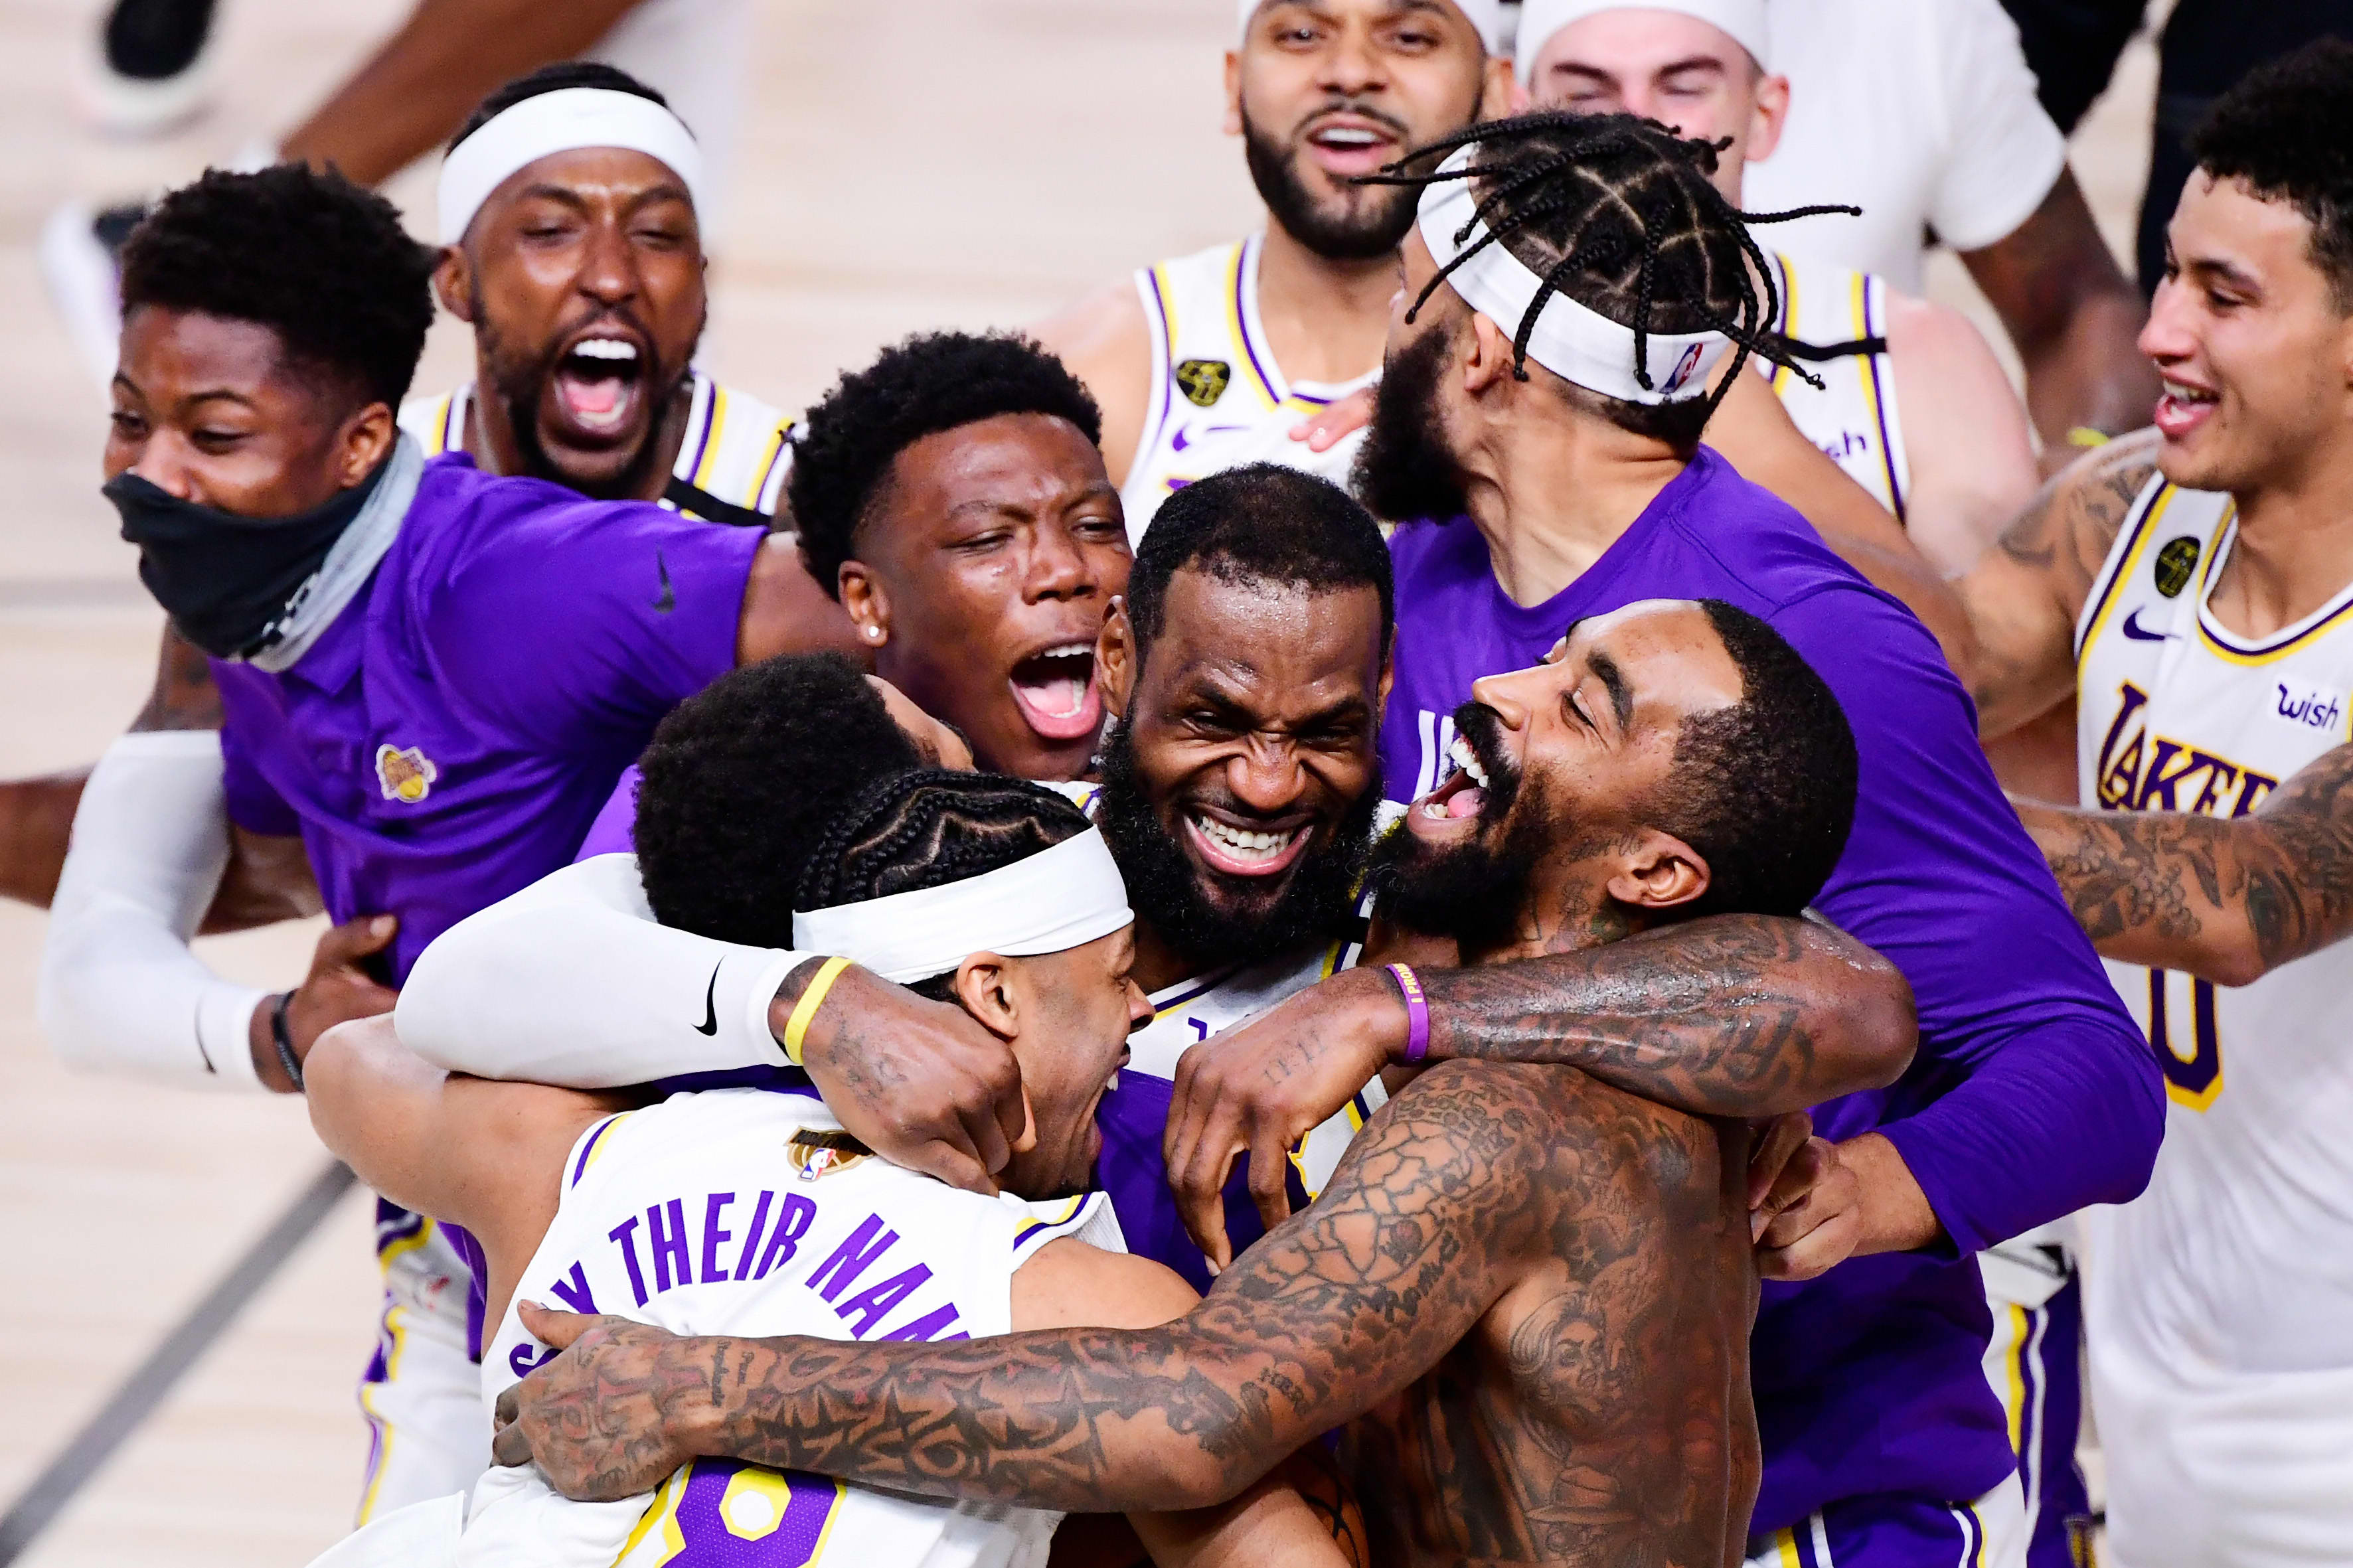 Los Angeles Lakers win NBA title, capping league's coronavirus bubble season